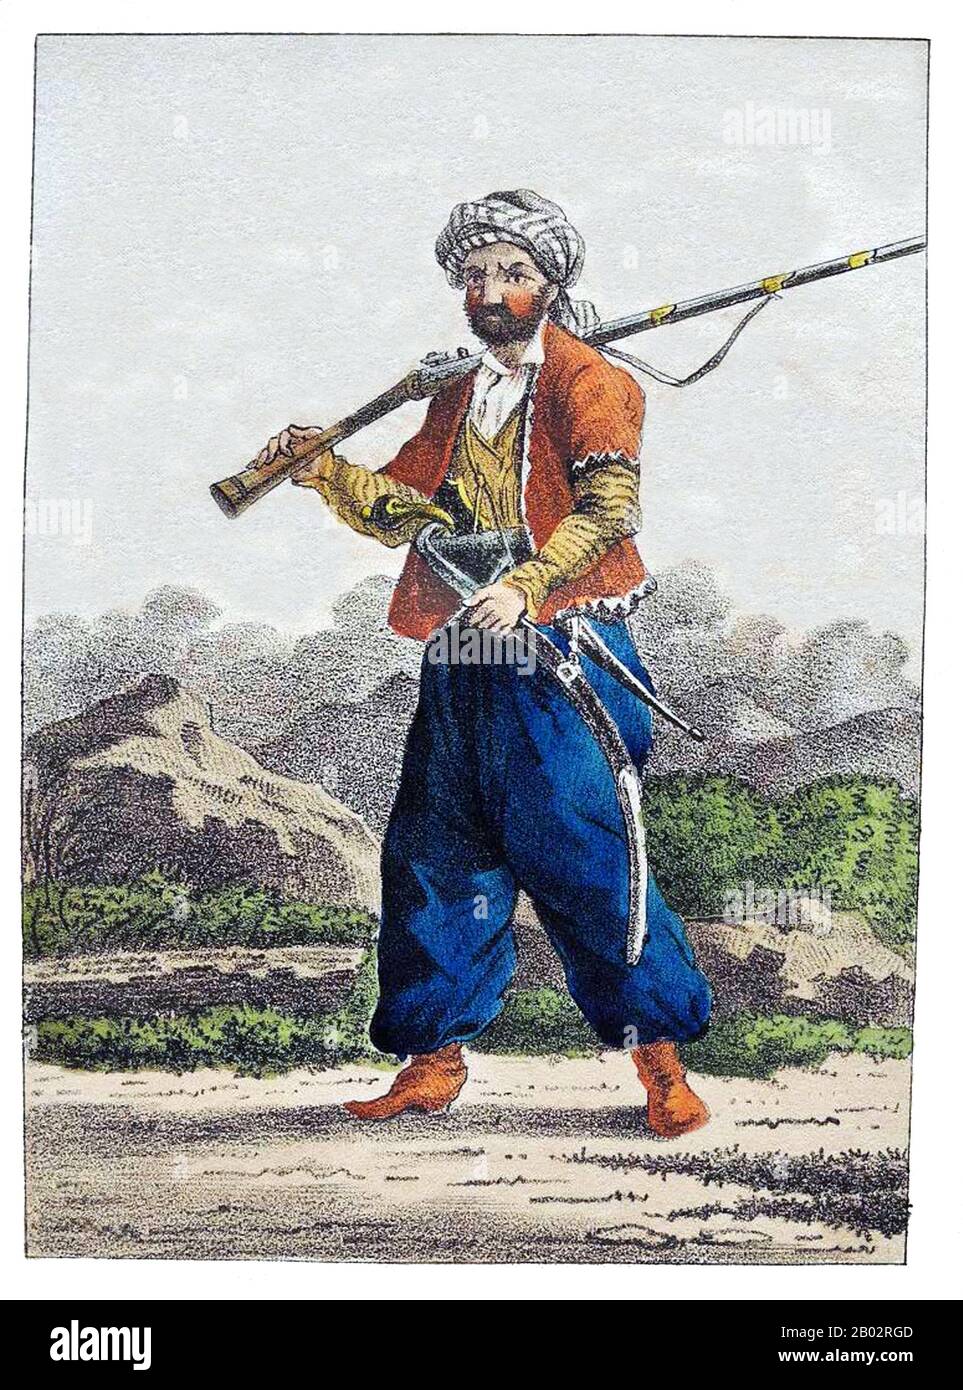 Die Kurden sind eine ethnische iranische Gruppe im Nahen Osten und bewohnen meist ein zusammenhängendes Gebiet, das angrenzende Teile des heutigen Iran, Irak, Syrien und der Türkei umfasst, eine geokulturelle Region, die oft als "Kurdistan" bezeichnet wird. Die Kurden haben eine ethnische Vielfalt. Sie sind kulturell und sprachlich eng mit den iranischen Völkern verwandt und daher oft selbst als iranisches Volk eingestuft. Die kurdischen Sprachen bilden eine Untergruppe der nordwestiranischen Sprachen. Die Kurden haben eine Zahl von etwa 40 Millionen, die Mehrheit lebt in Westasien, einschließlich eines bedeutenden kurdischen Diaspora-Co Stockfoto